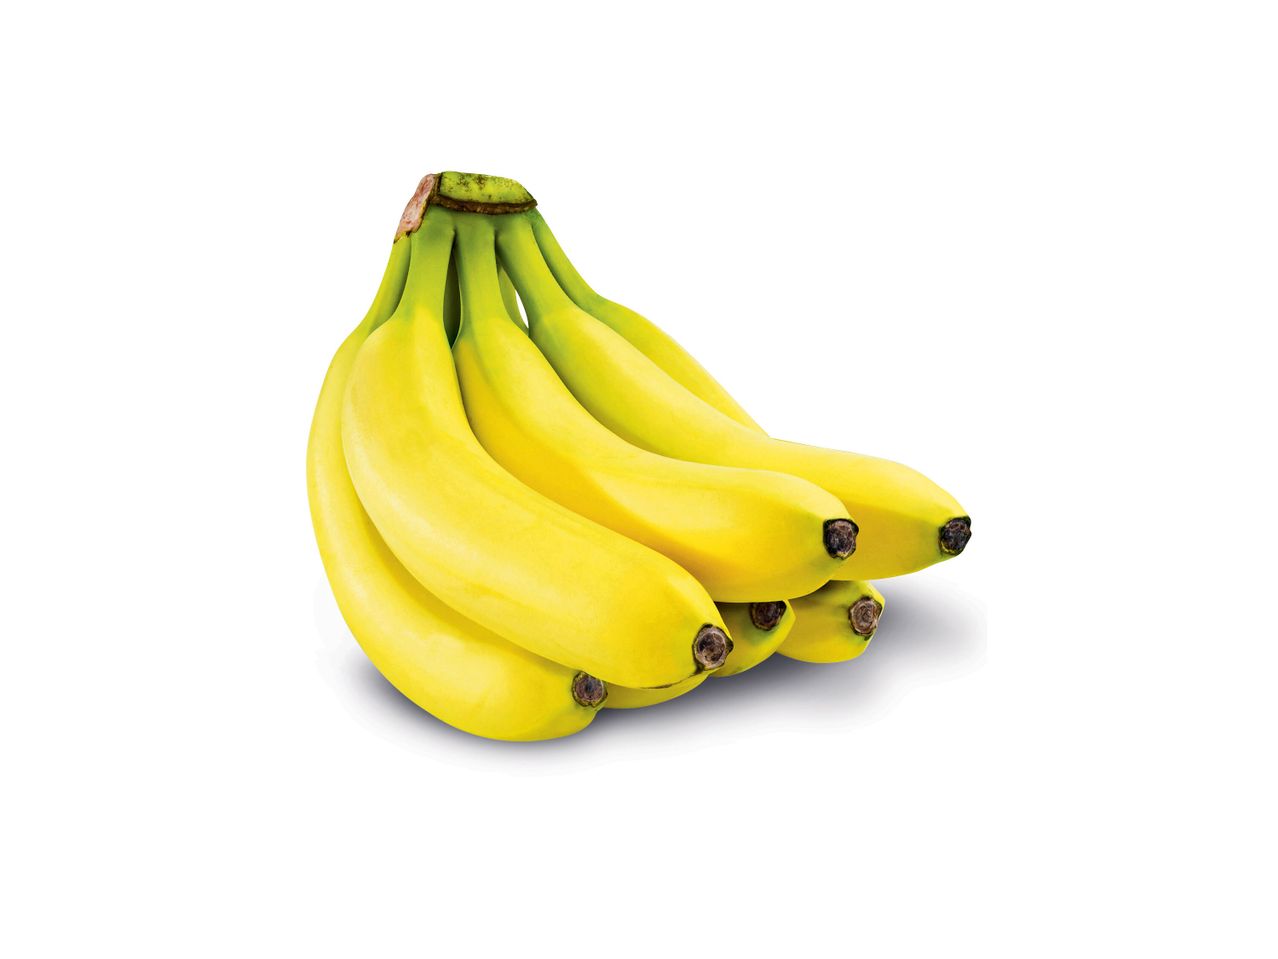 Ver empliada: Banana Biológica - Imagem 1